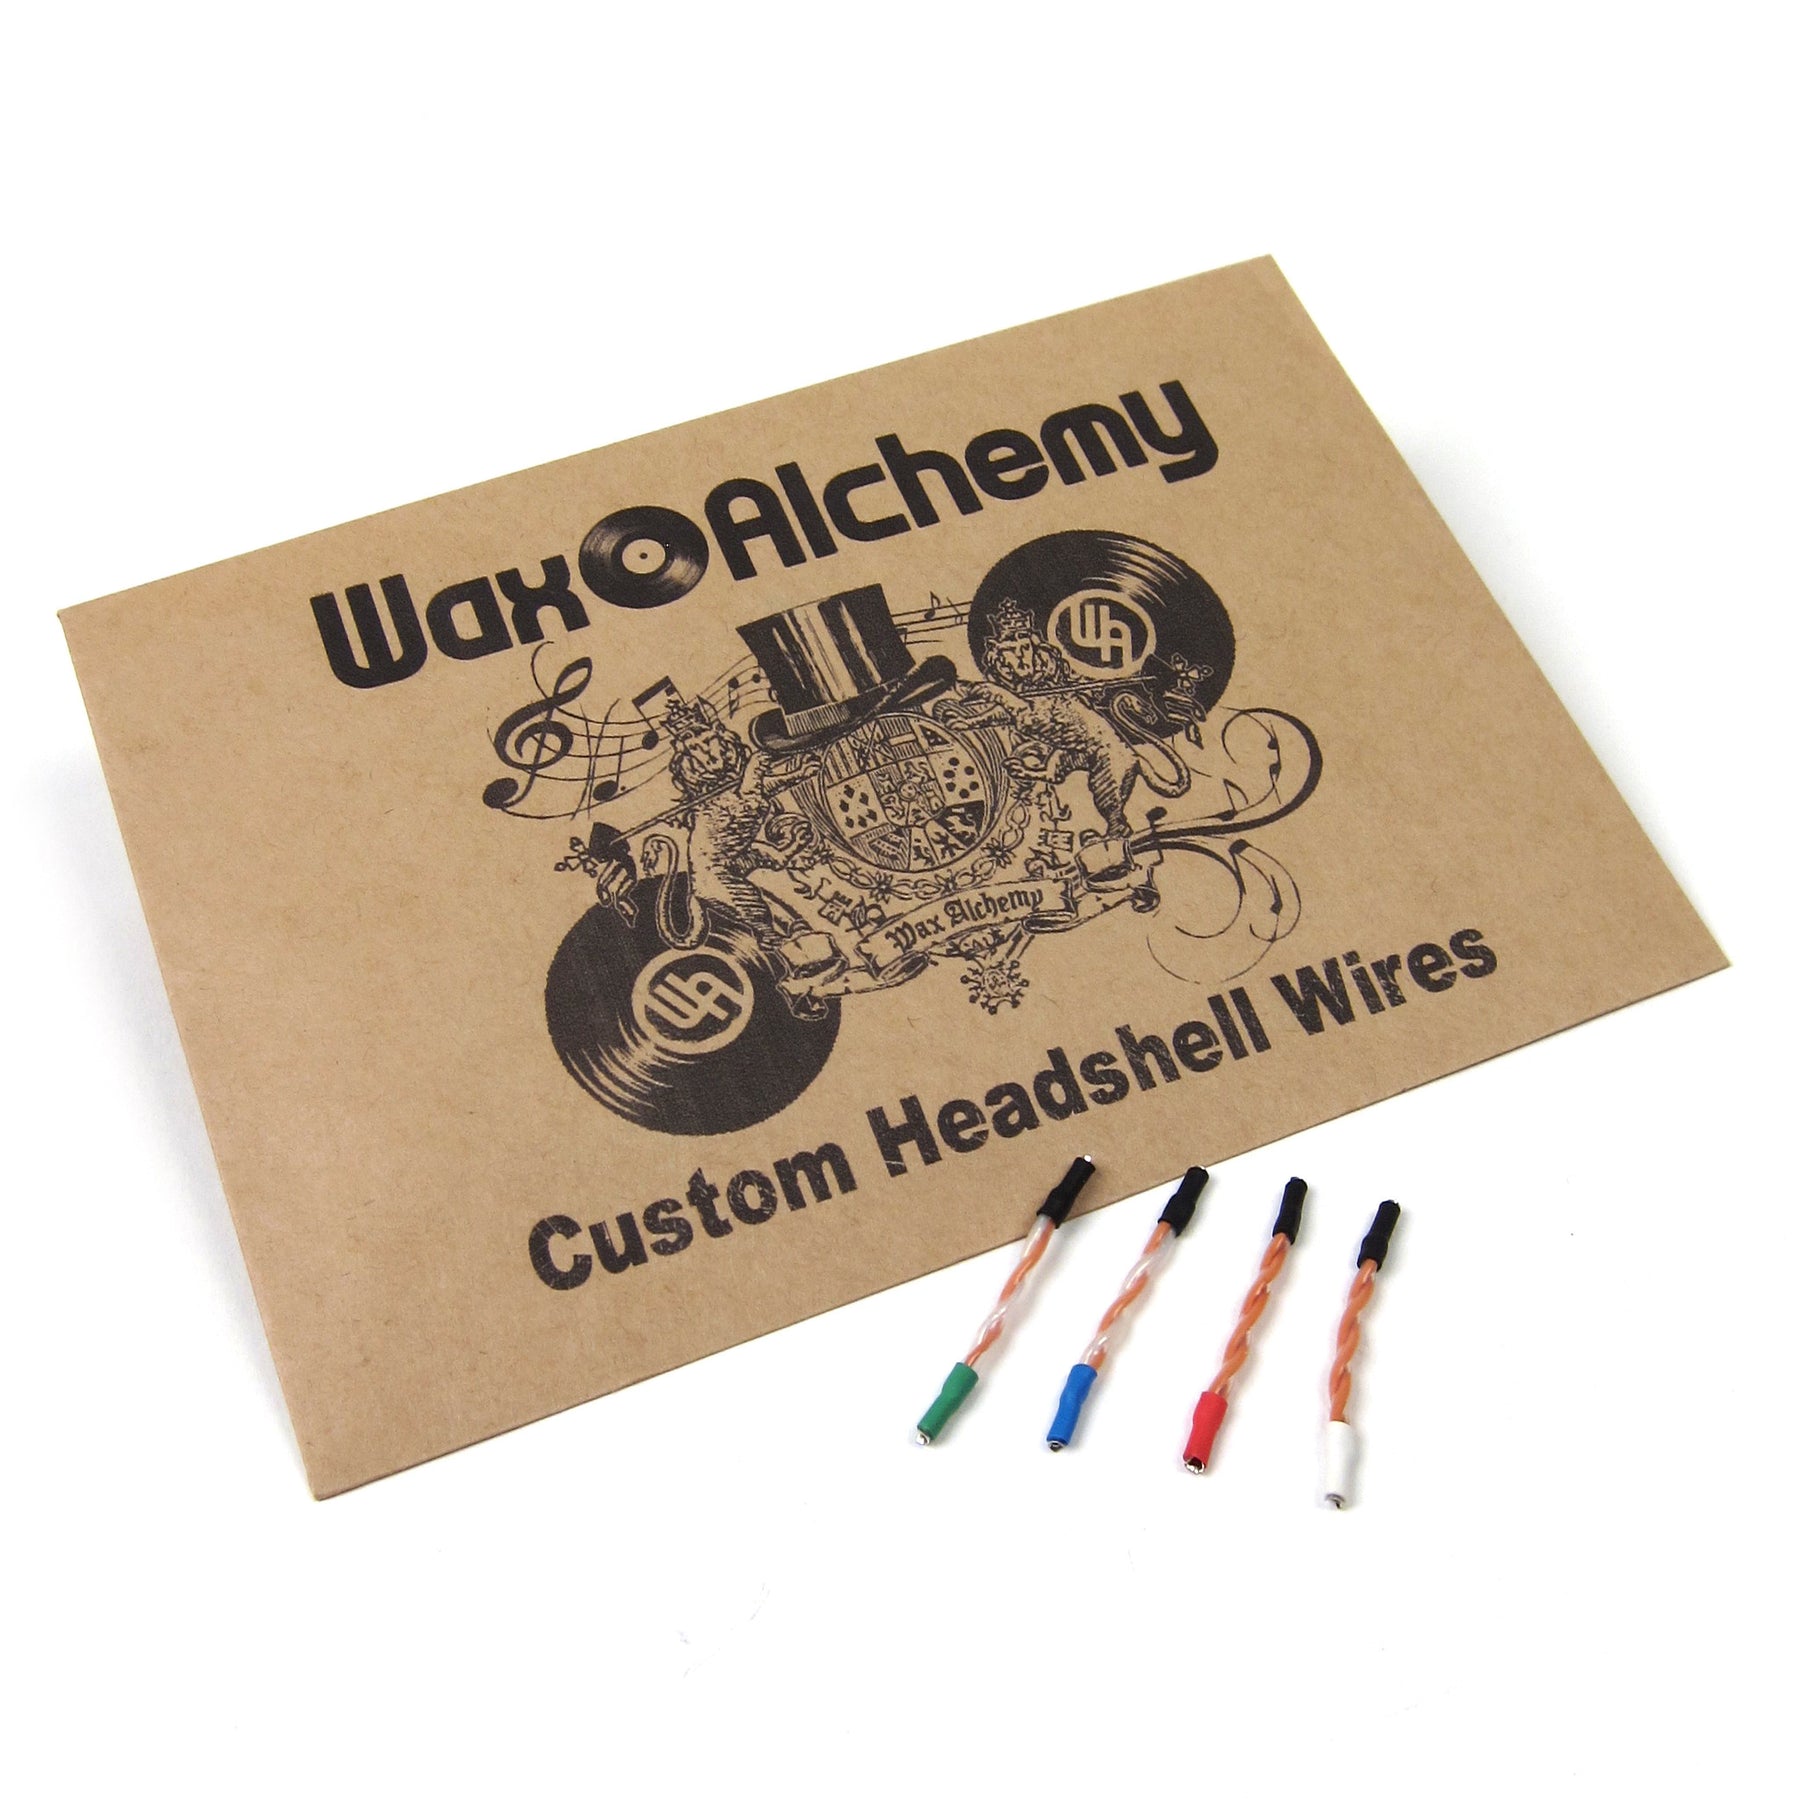 waxalchemy-customwires_1800x.jpg?v=14896